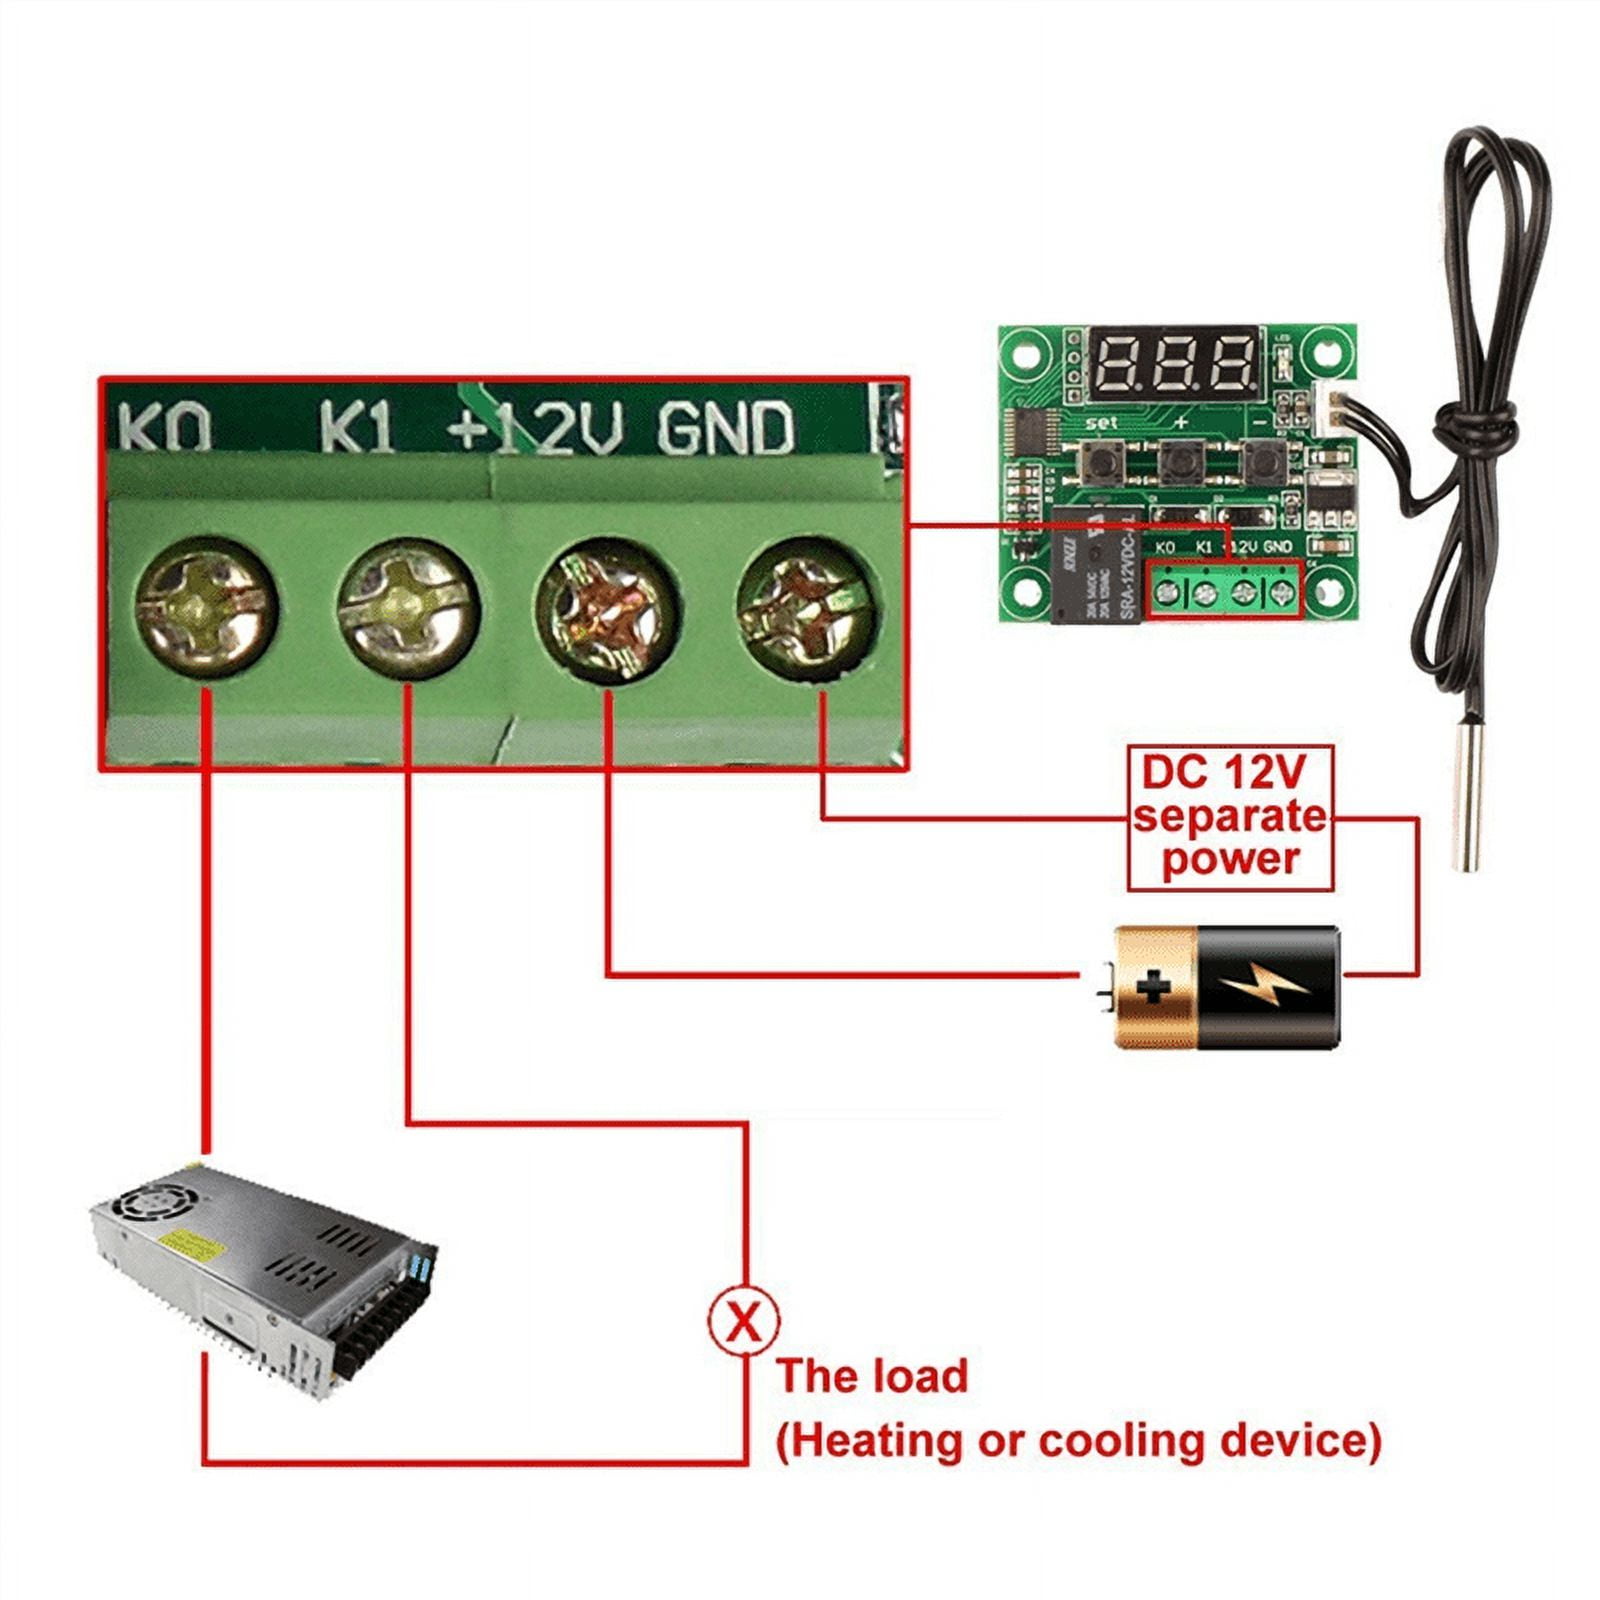 Thermostat XH-W1209 DC 12V zur Temperaturregelung mit